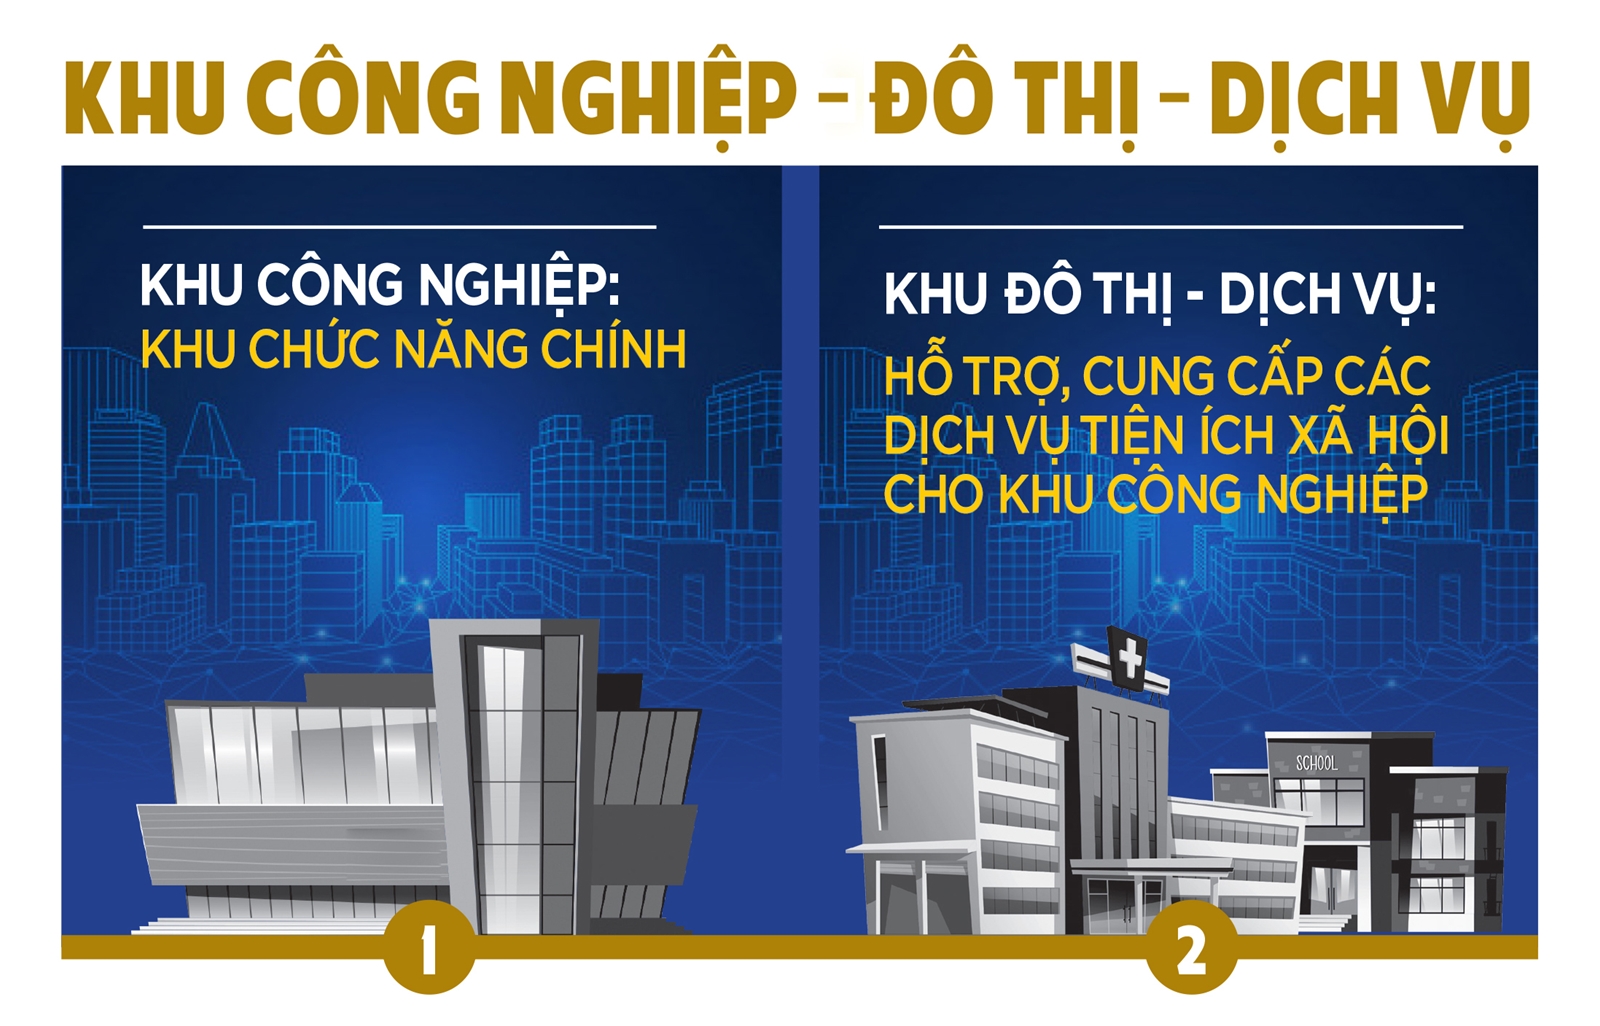 Khu công nghiệp - đô thị - dịch vụ và giấc mơ “thung lũng Silicon” Việt Nam - 4